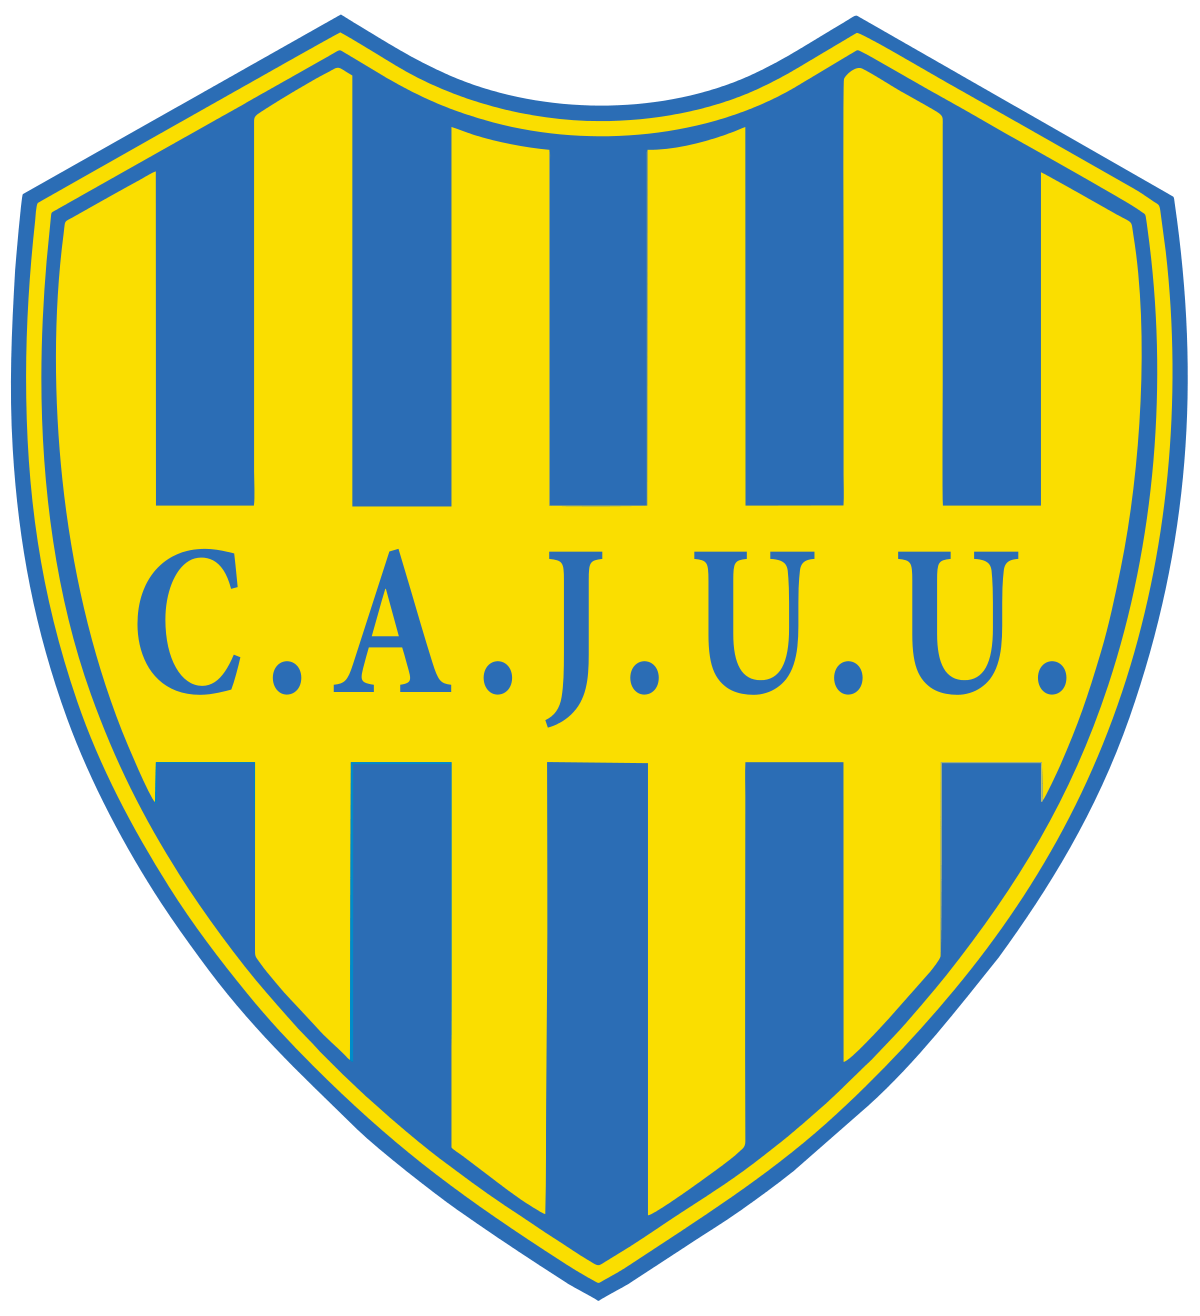 Independiente de Chivilcoy - Juventud Unida Universitario live